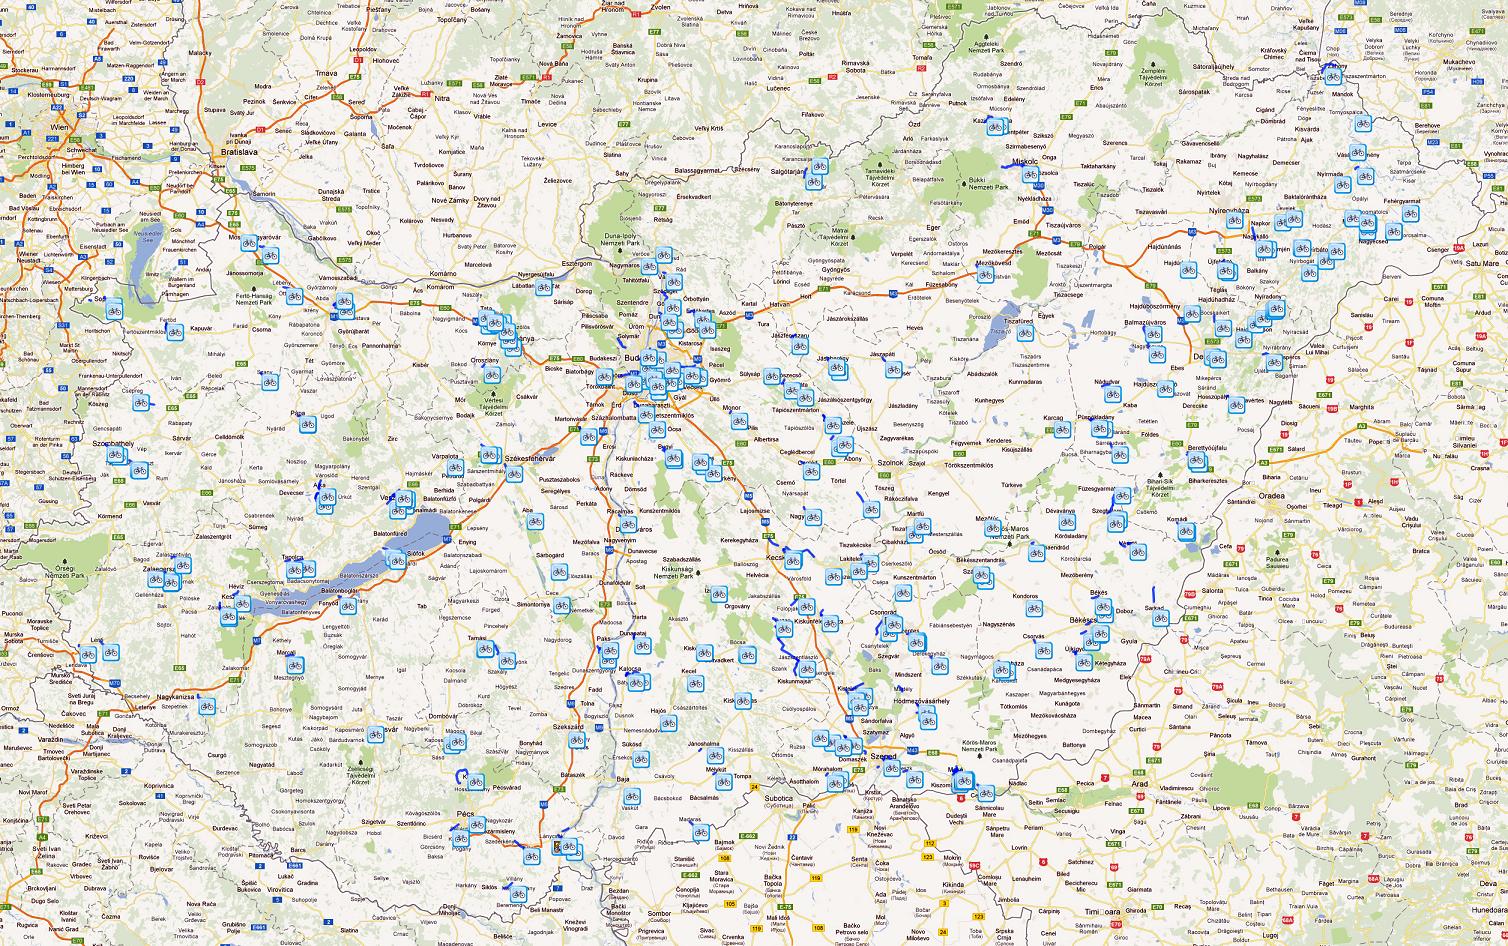 biciklis térkép magyarország Magyarország kerékpáros térképe   Biciklopédia biciklis térkép magyarország